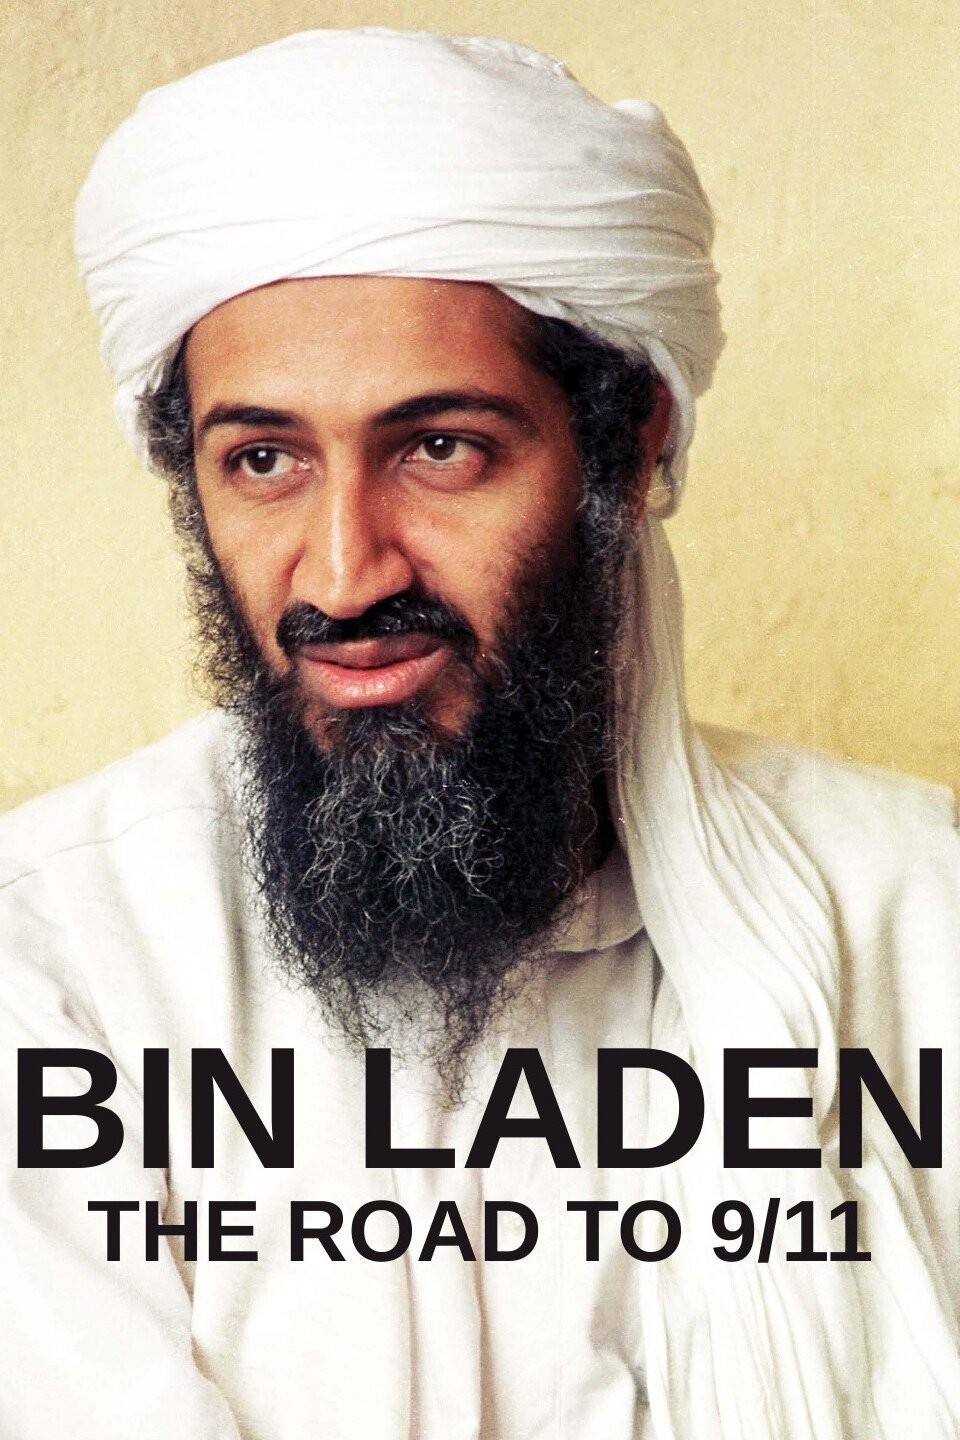 Bin laden: the road to 9/11 Season 1